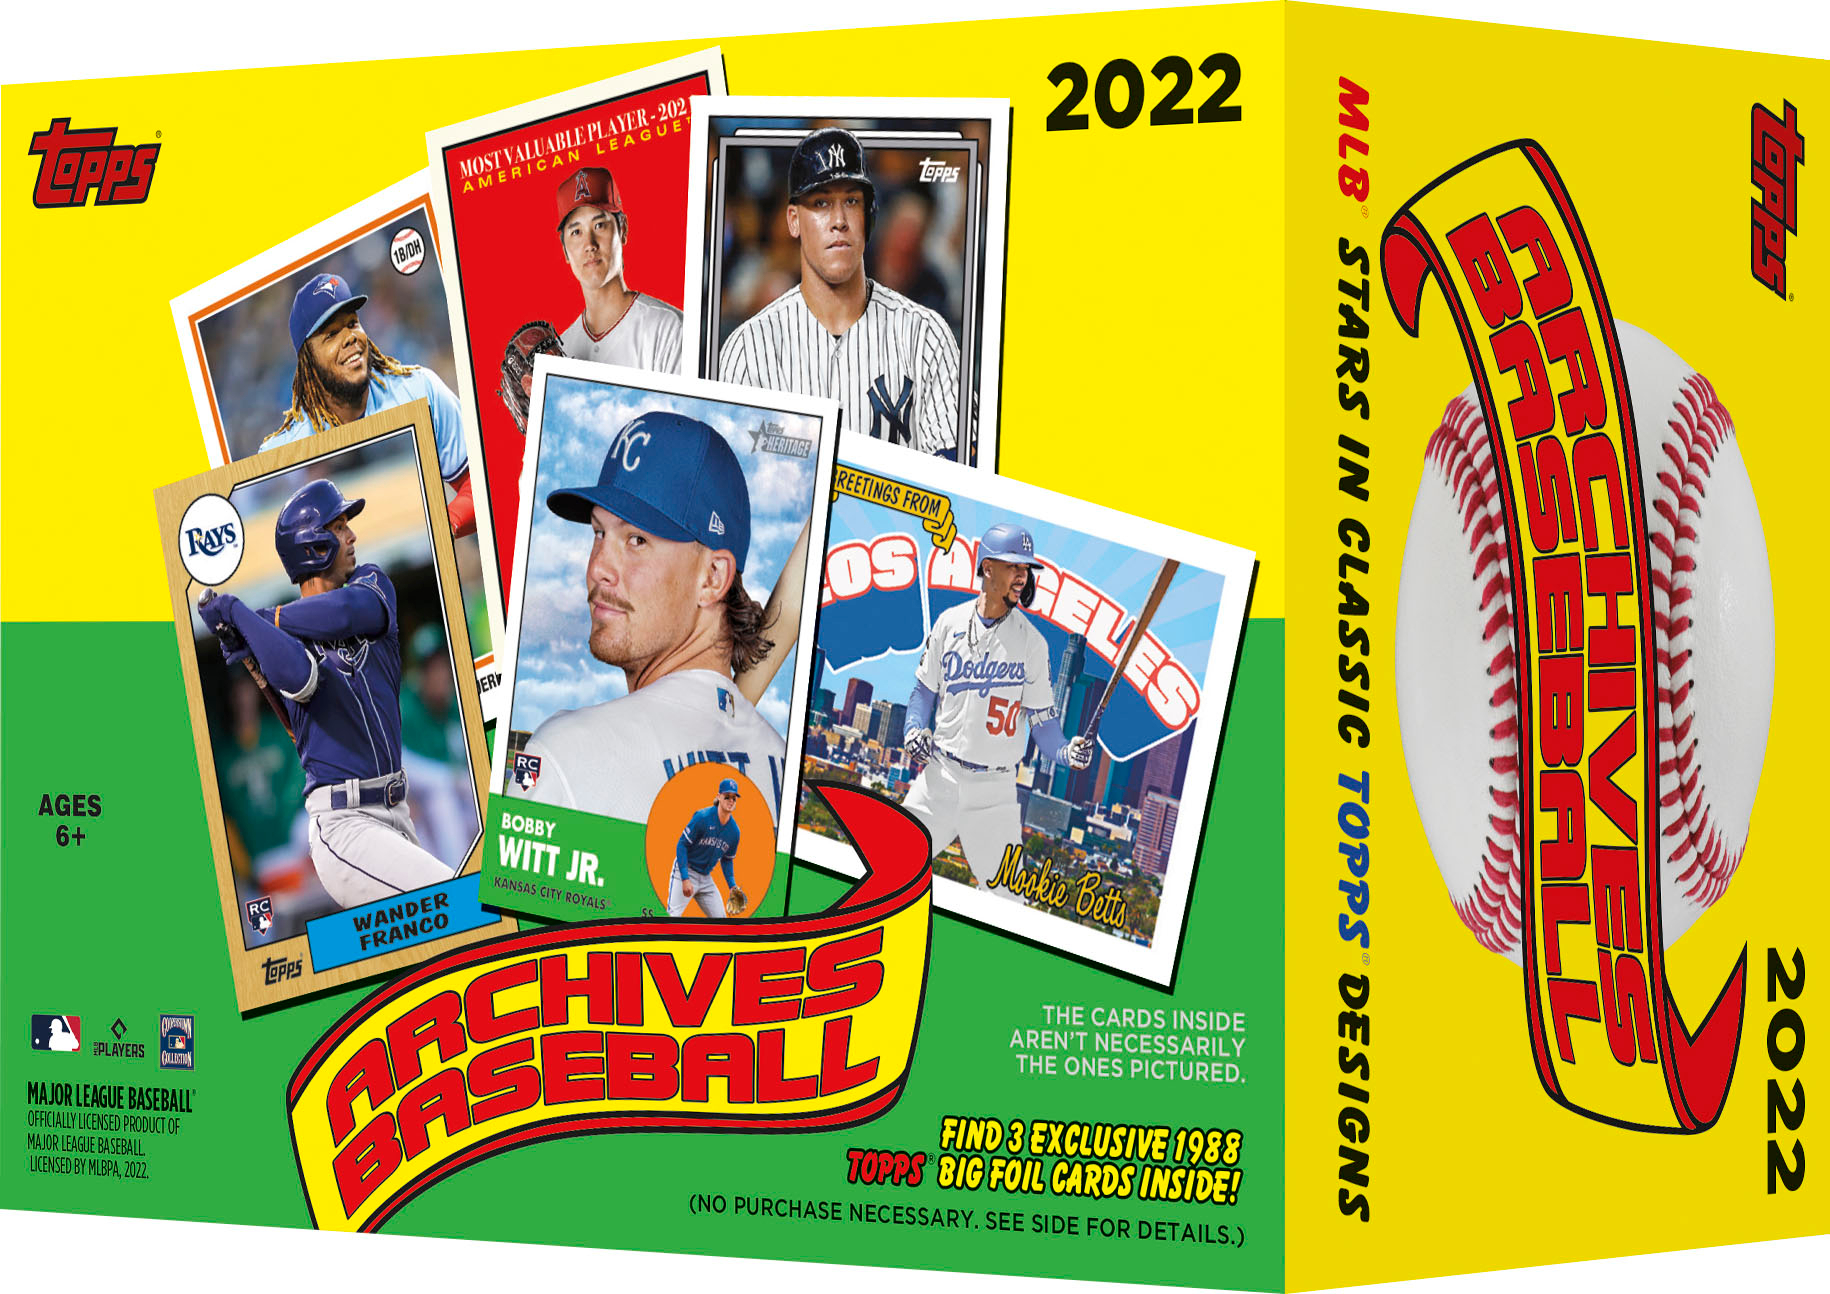 Topps 2023 Series 1 MLB Baseball Blaster Box SP-T23BB1B - Best Buy